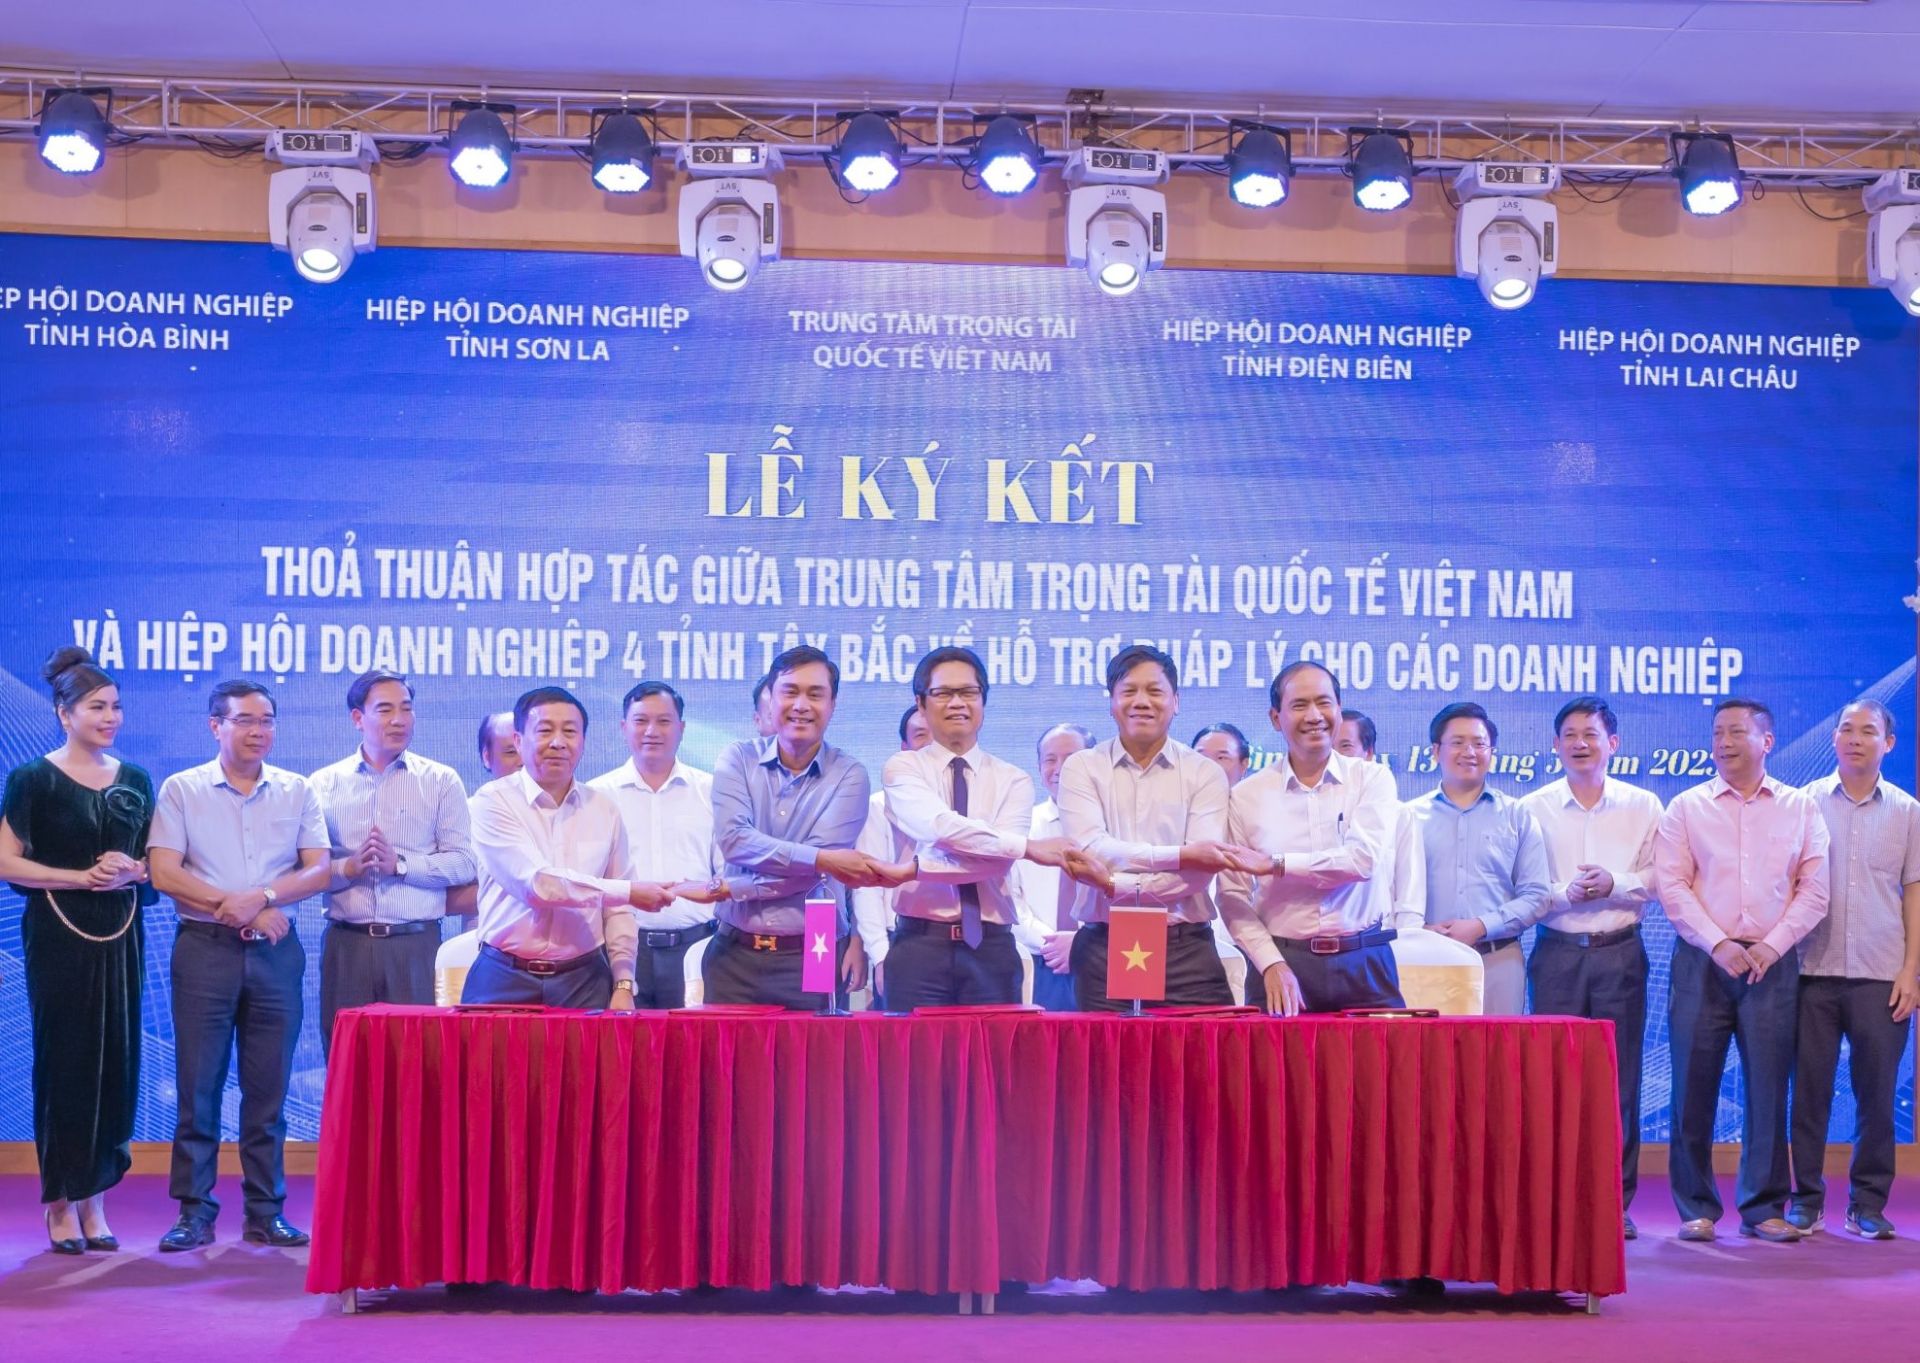 Lễ ký kết thỏa thuận hợp tác giữa Trung tâm trọng tài quốc tế Việt Nam và HHDN 4 tỉnh Tây Bắc do HHDN tỉnh Hòa Bình tổ chức tháng 5/2023